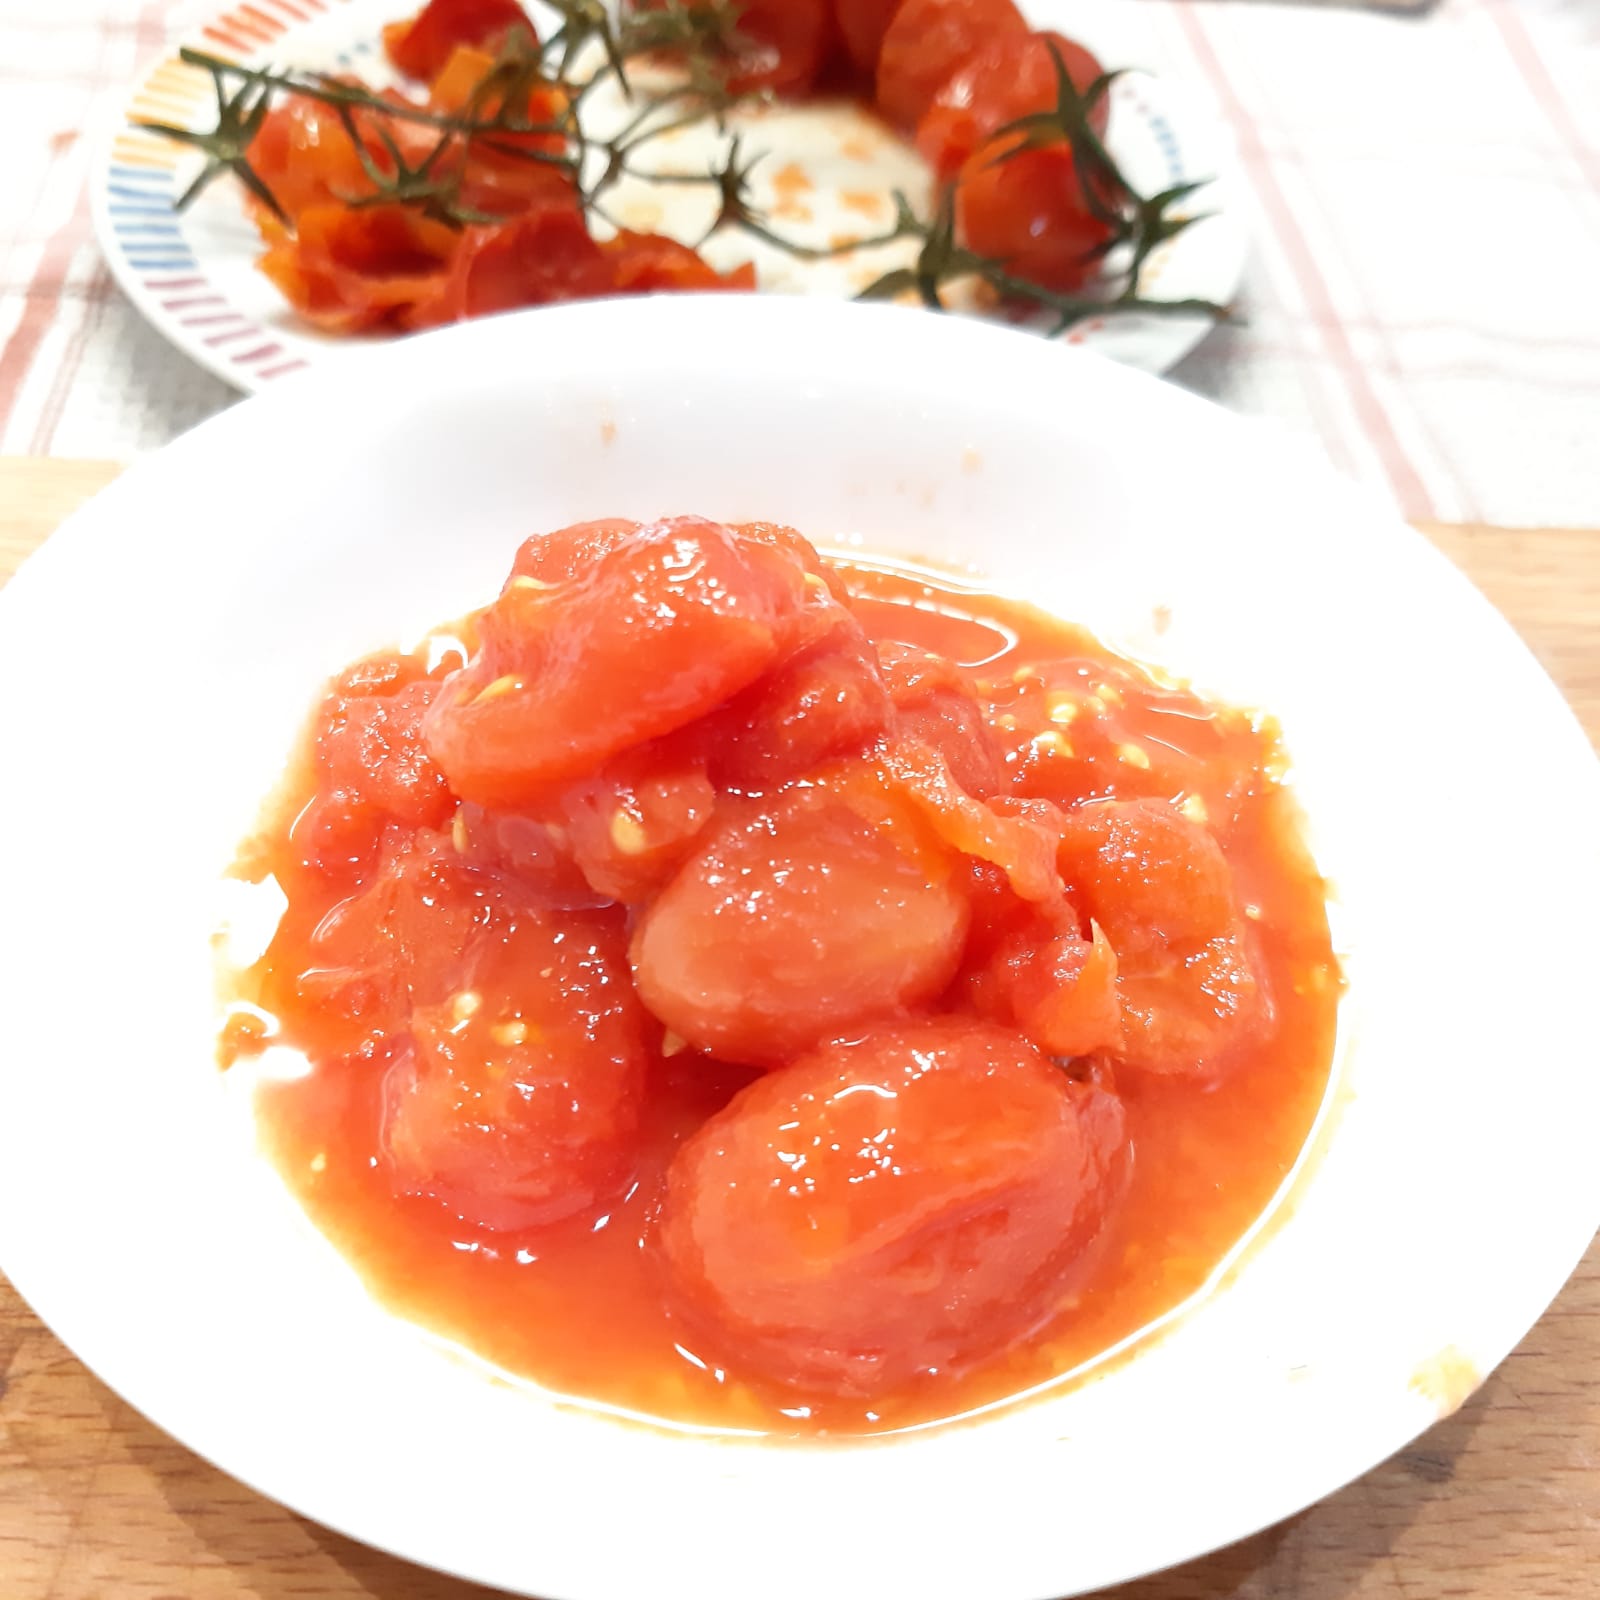 lorighittas con salsa alle melanzane e prosciutto